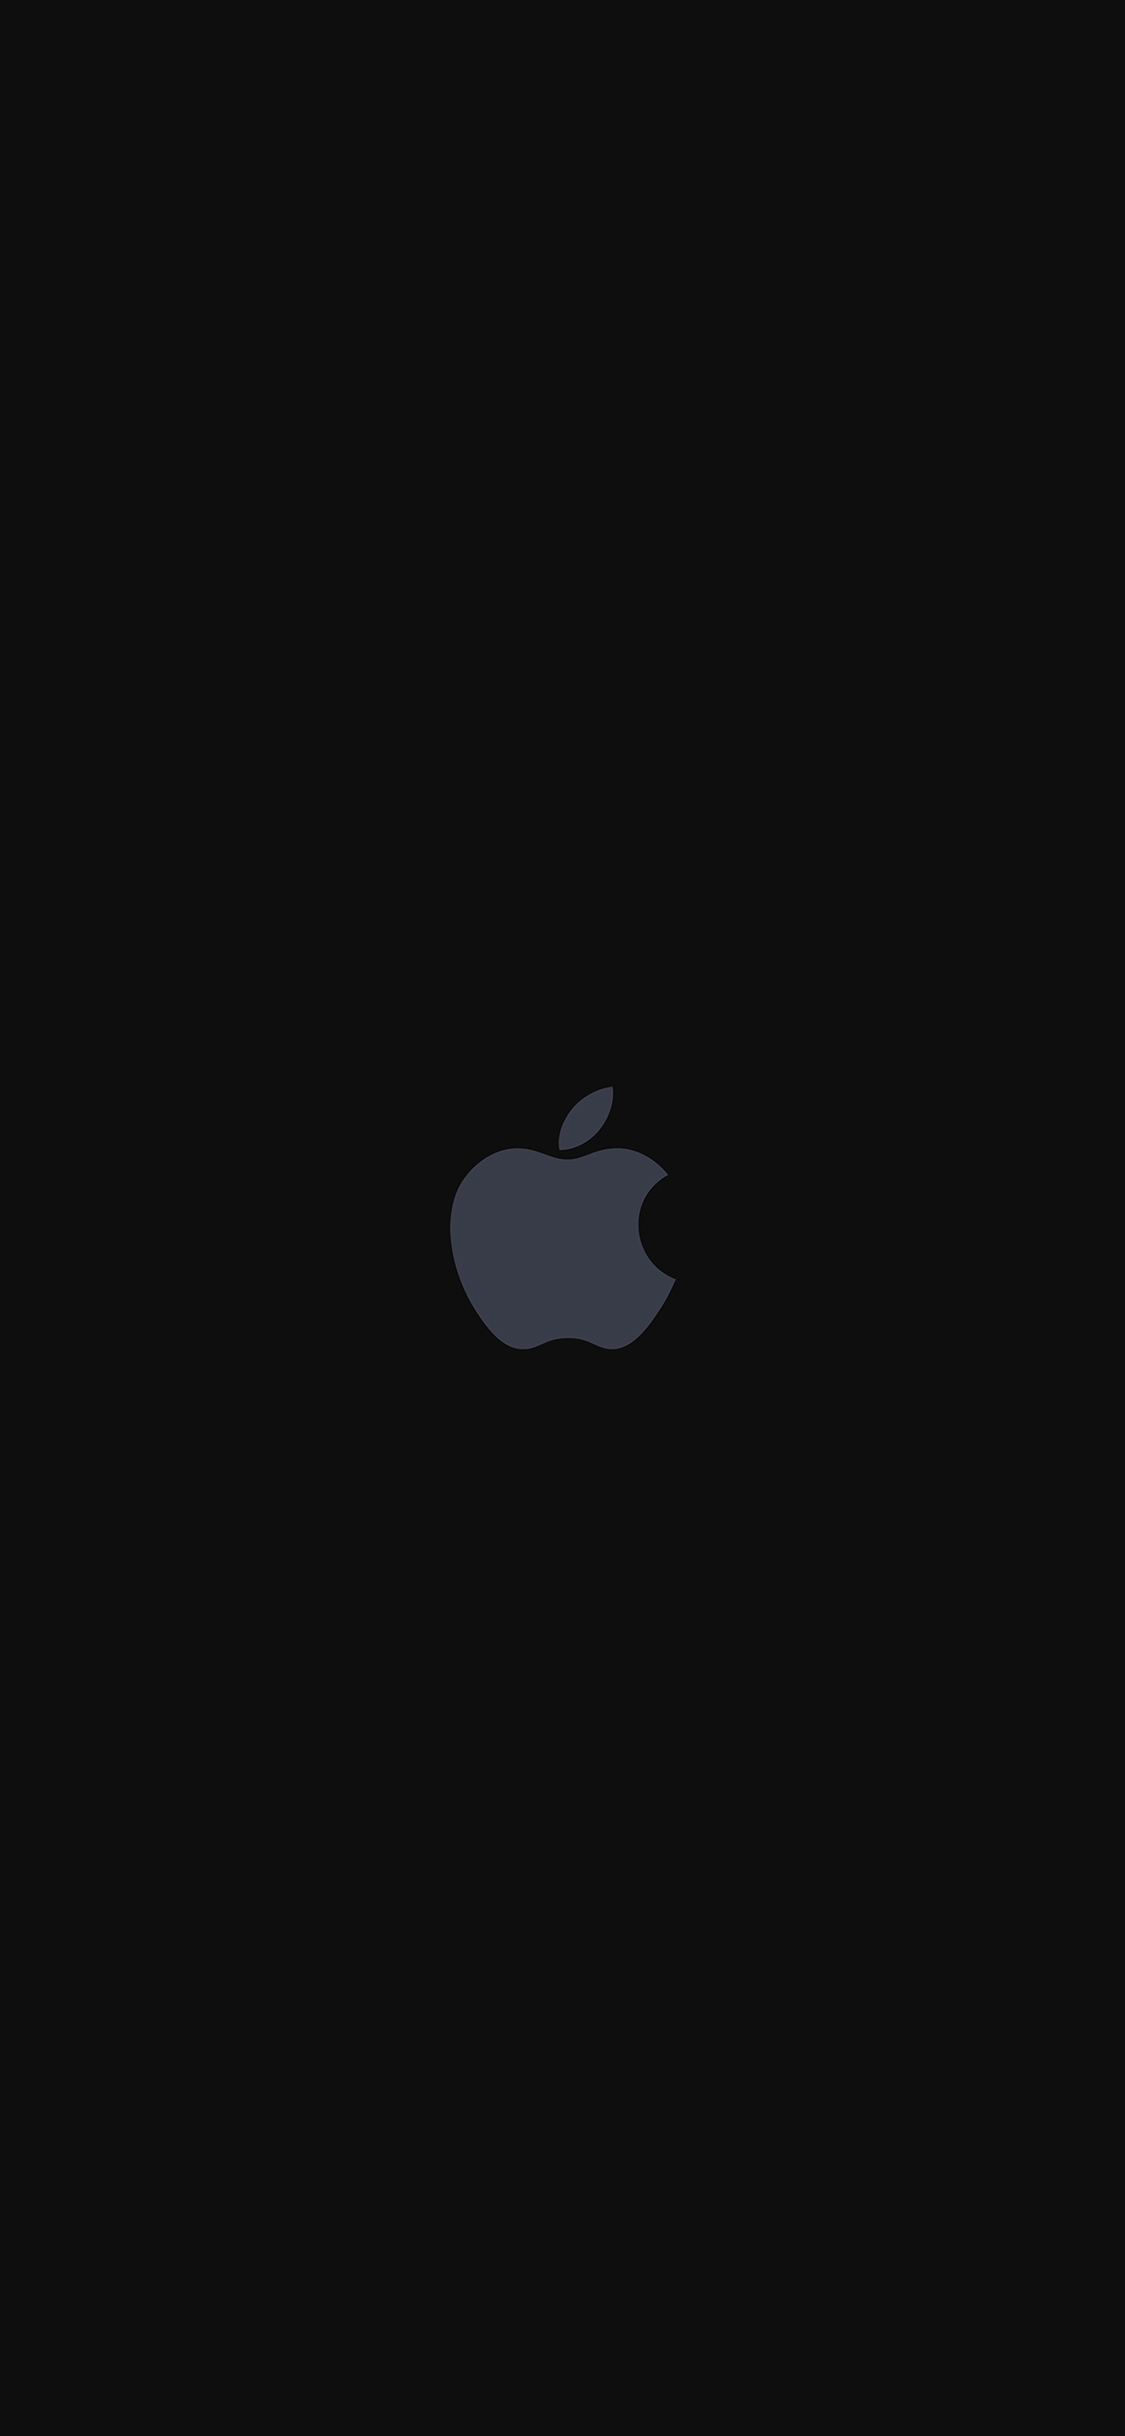 iphone logo wallpaper,schwarz,weiß,himmel,dunkelheit,text